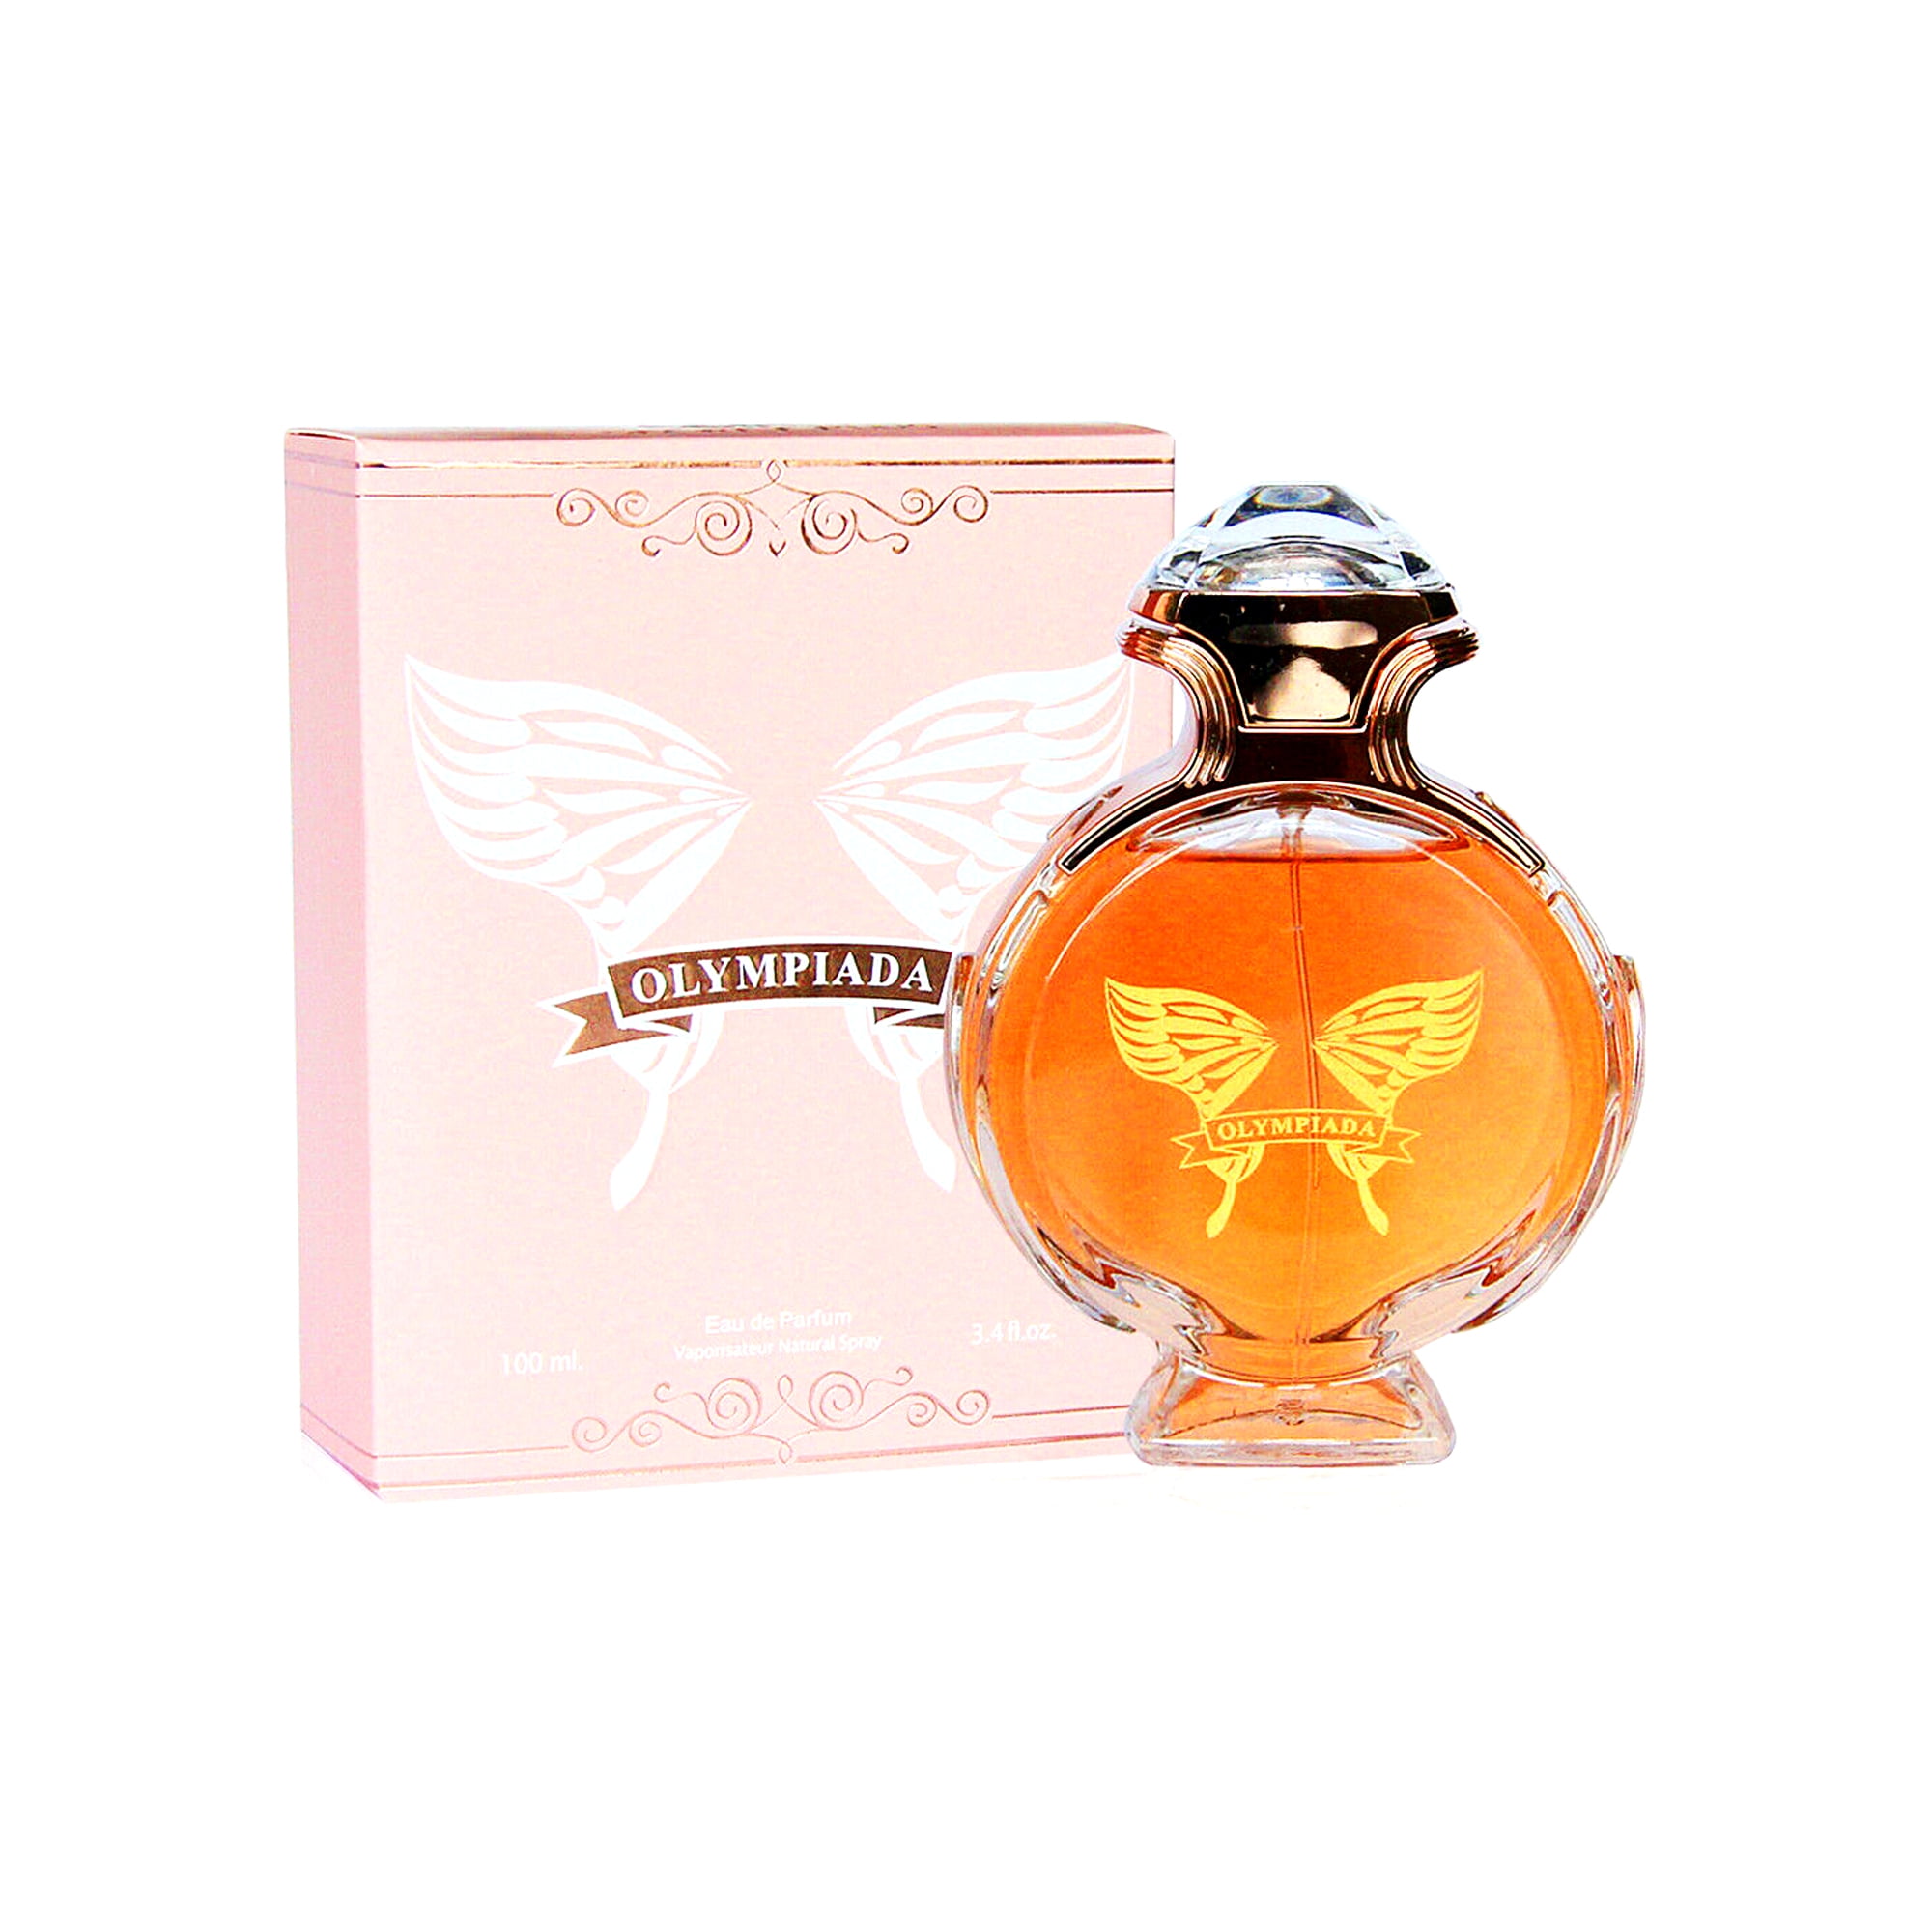 Perfume for Women by Secret Plus, 3.4 Oz - 100 ml / Eau De Parfum Natural Spray Vaporizateur - Walmart.com